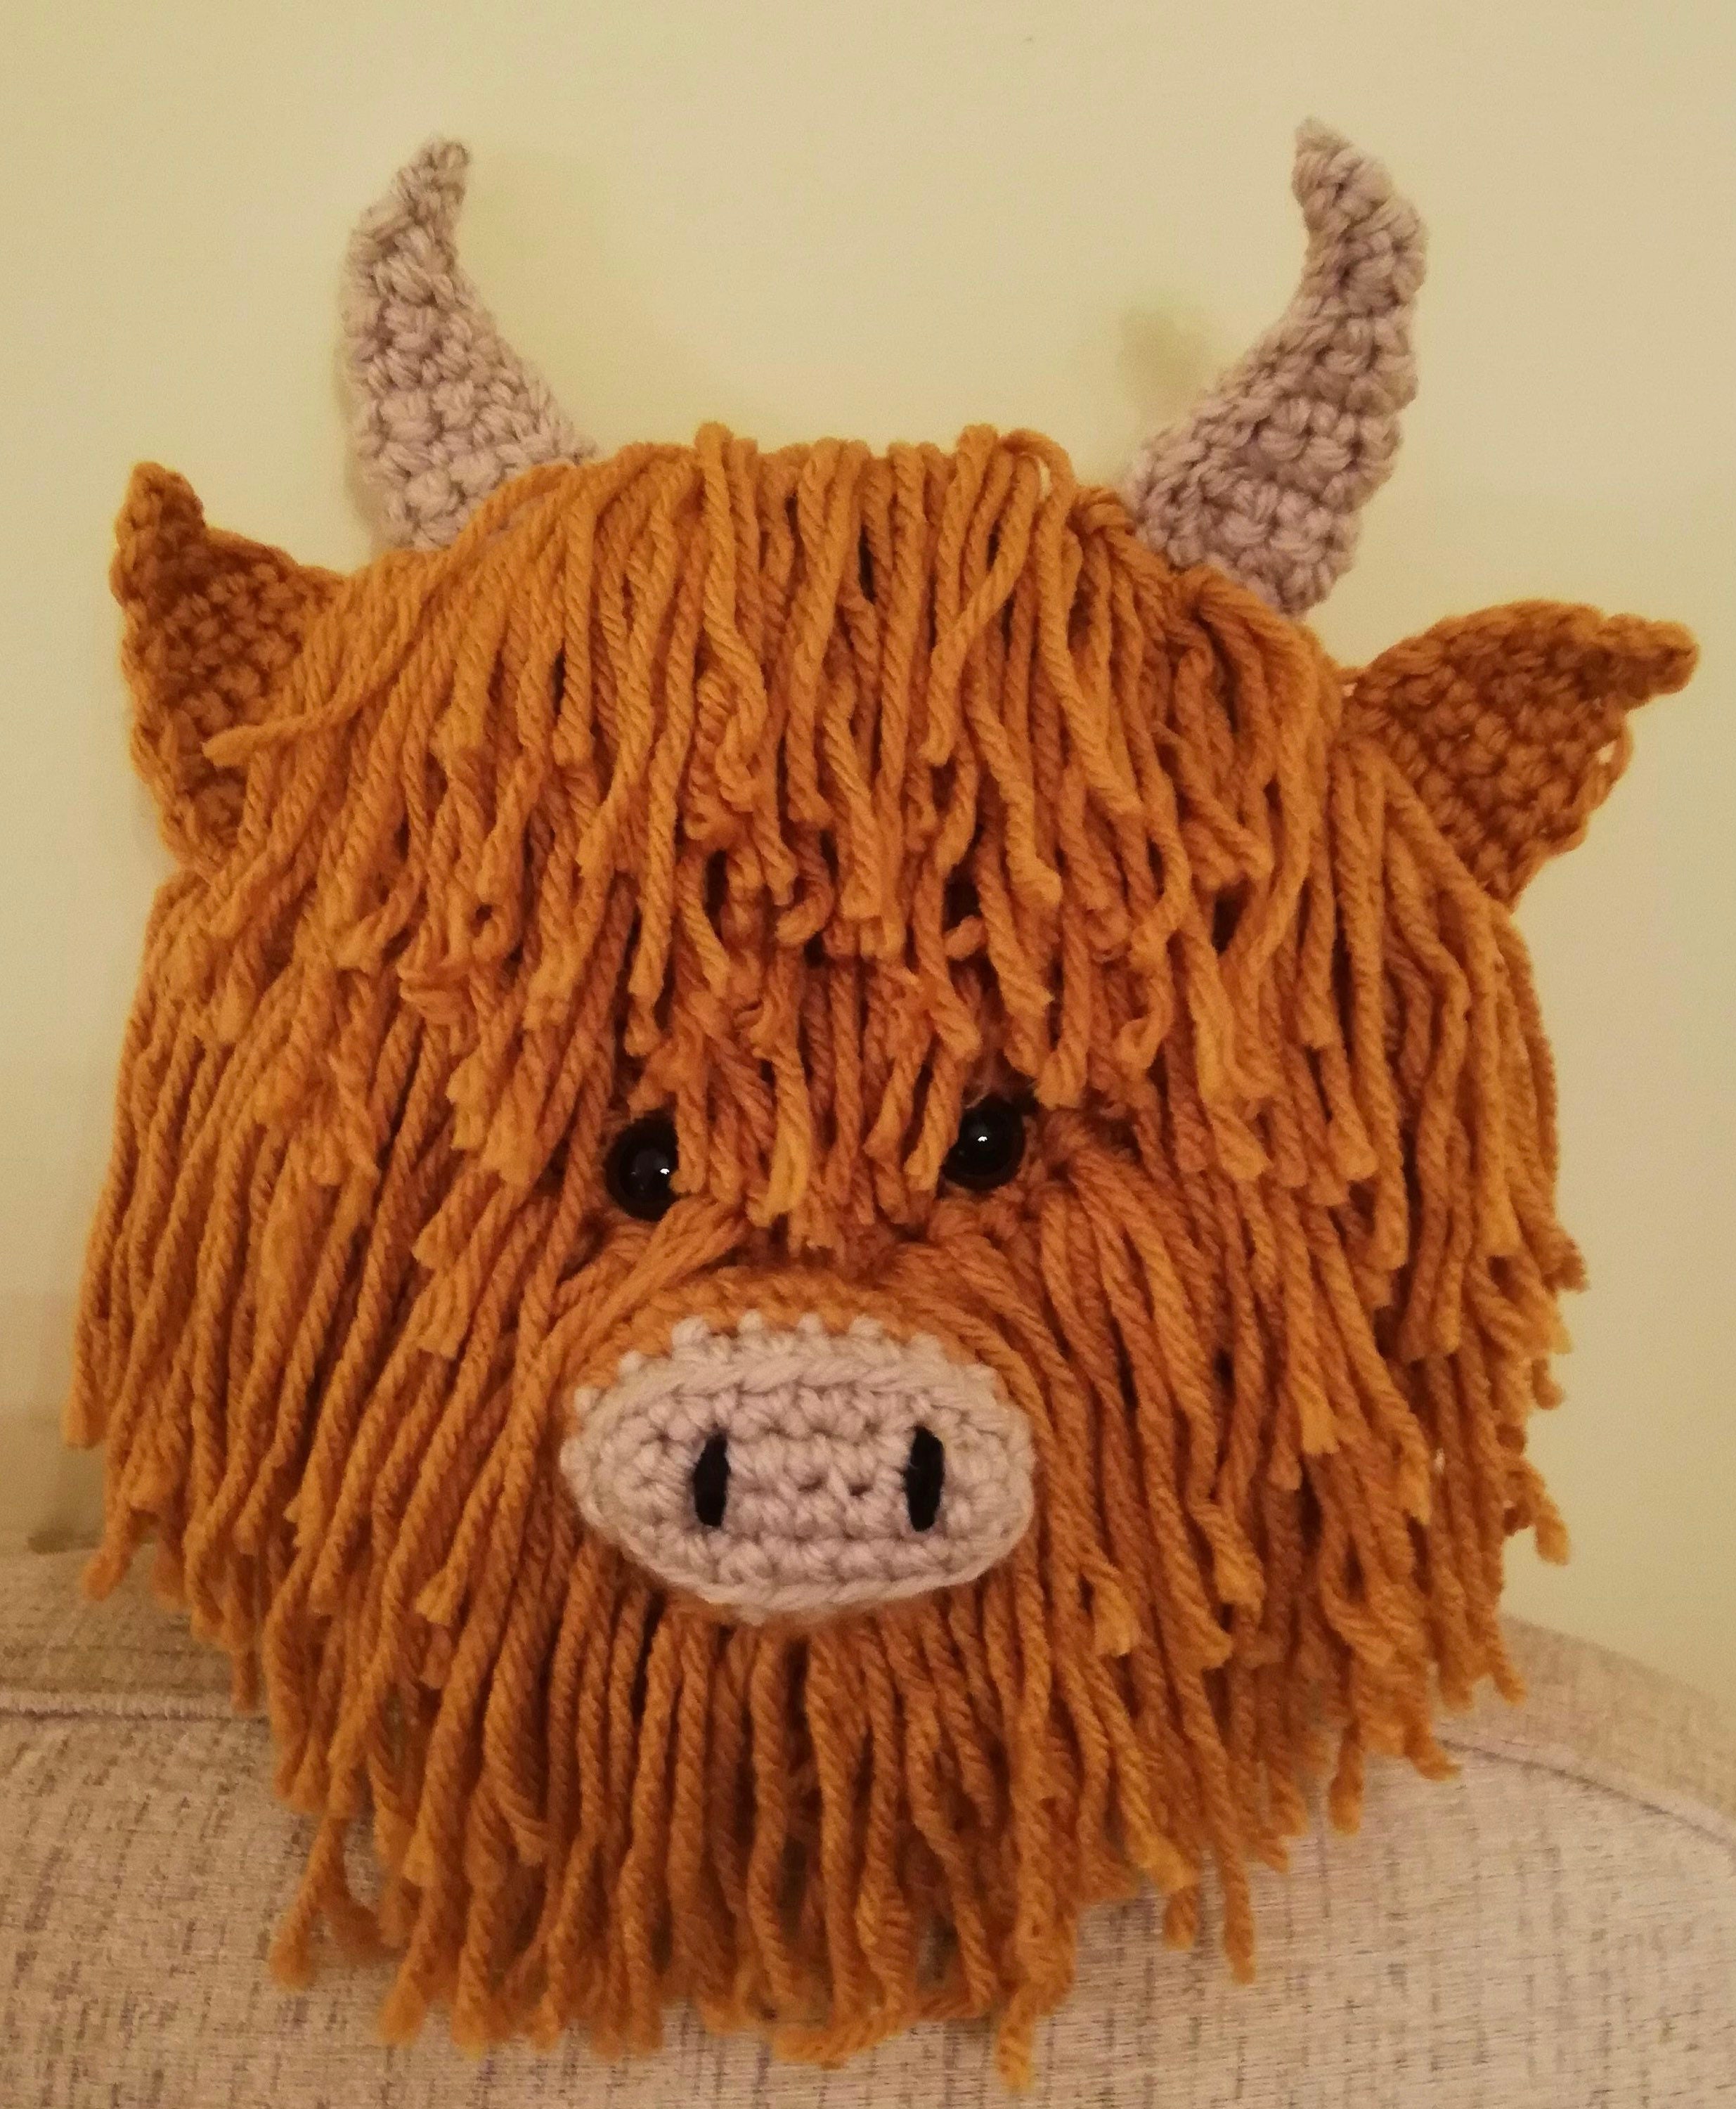  Beginner Cow Ball Crochet Kit - Easy Crochet Starter